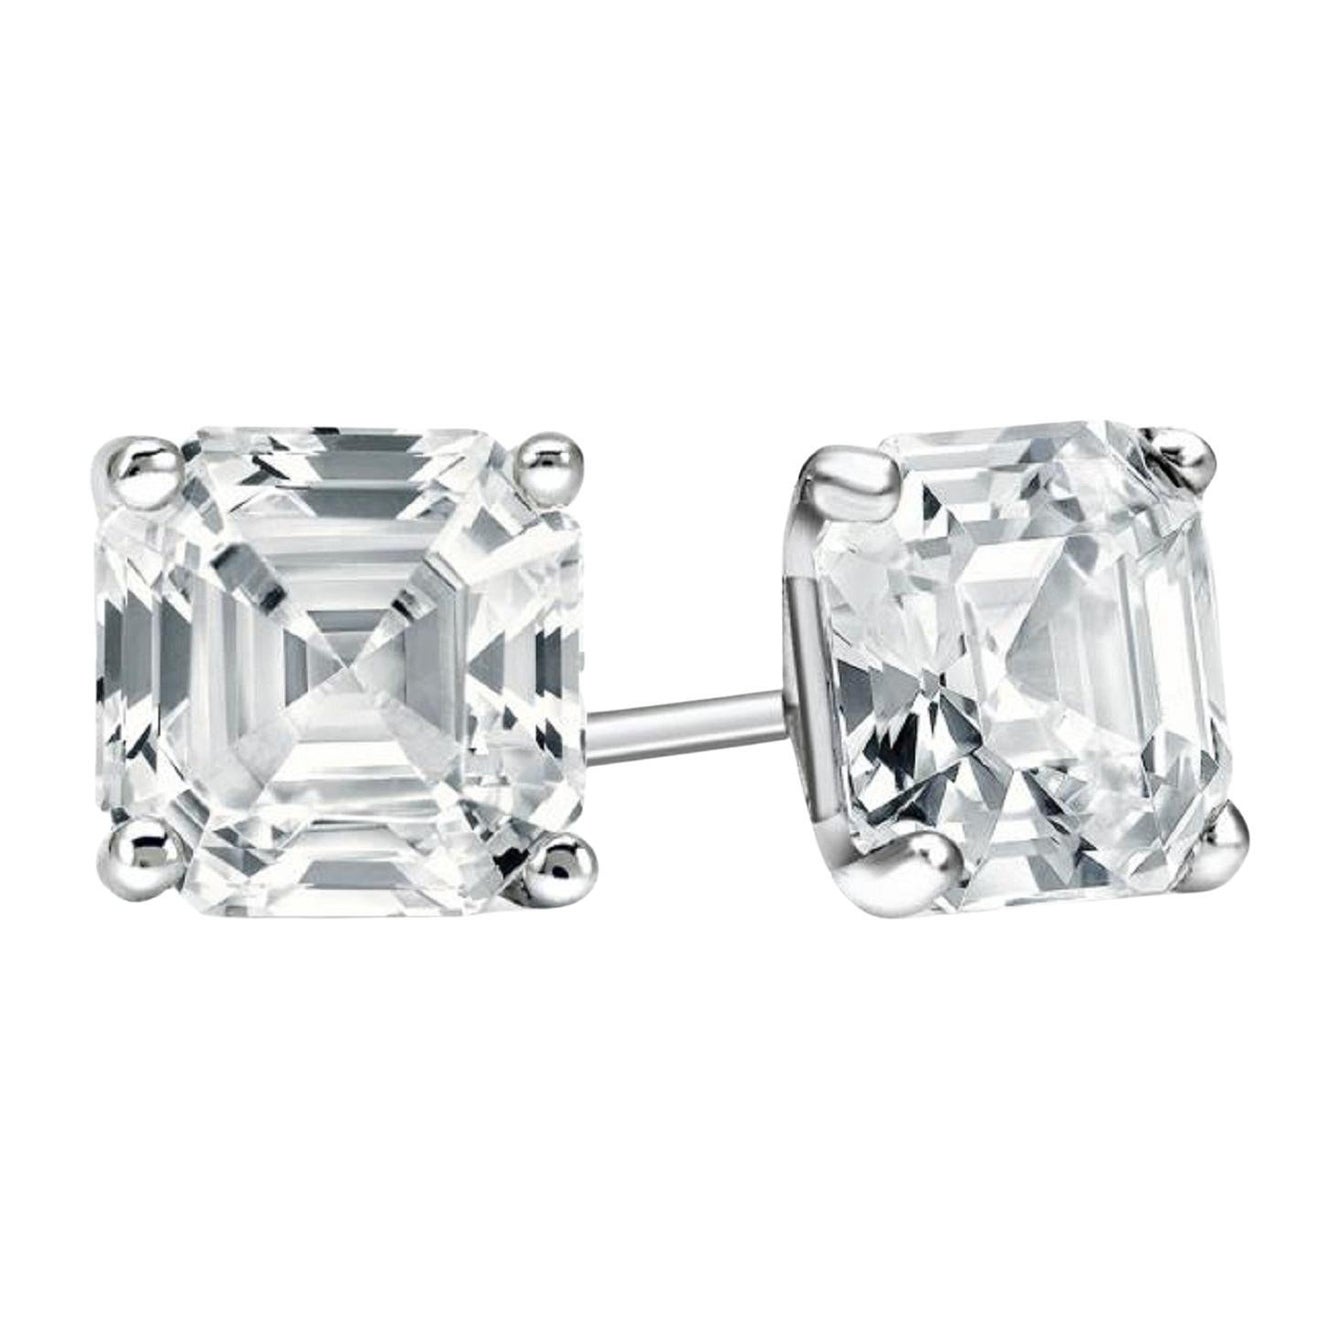 2 Carats Asscher Cut Diamond Platinum Studs For Sale